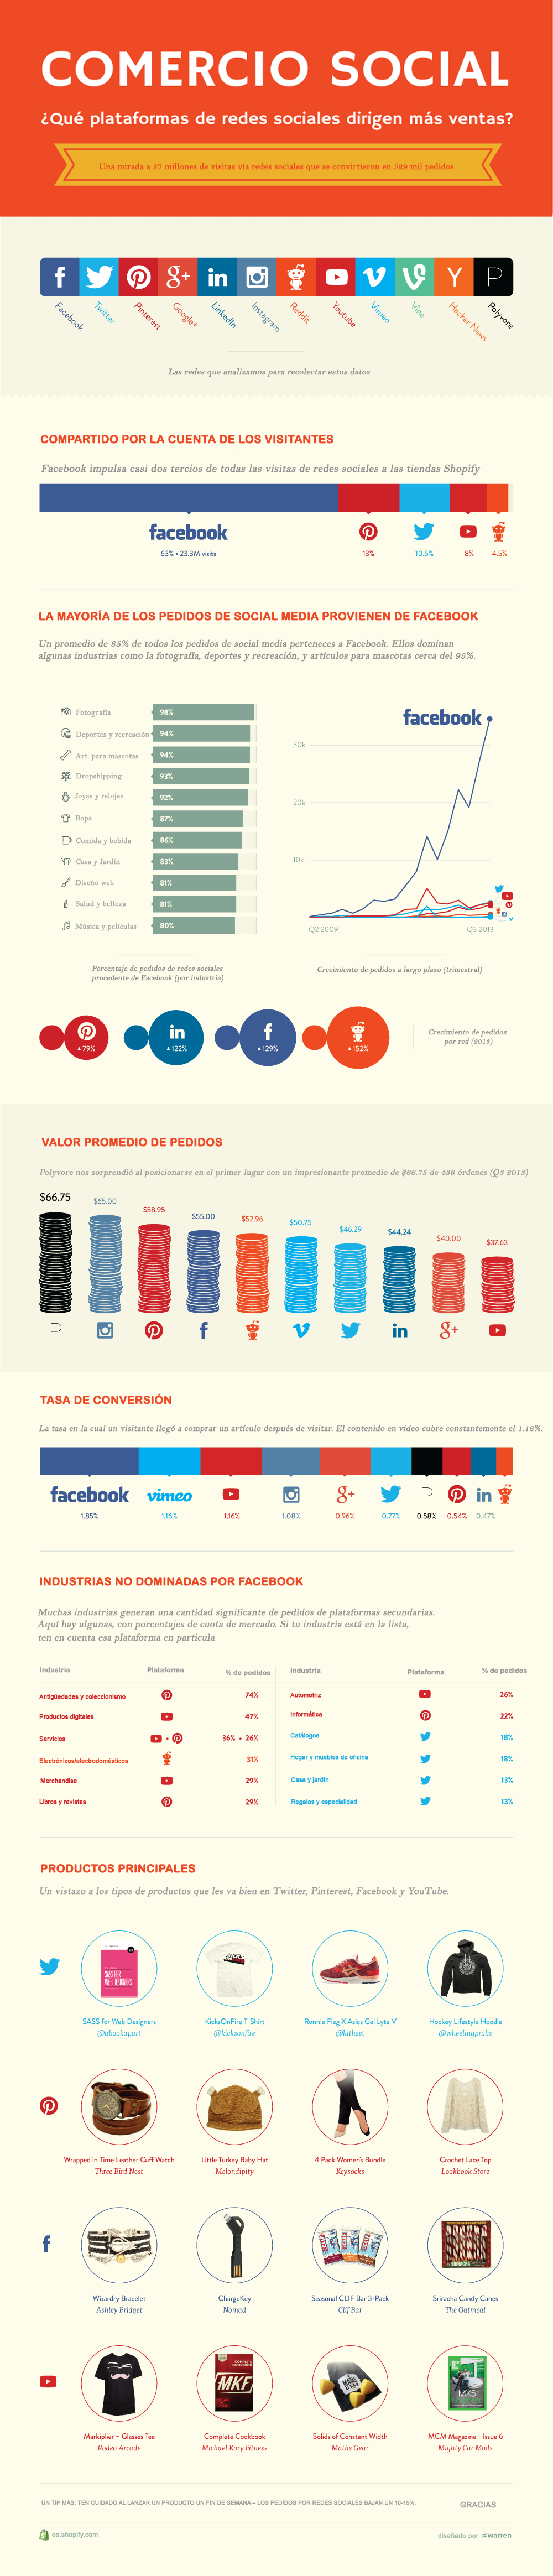 Infografia - Social Commerce: Redes sociales que más ventas conducen a ecommerce